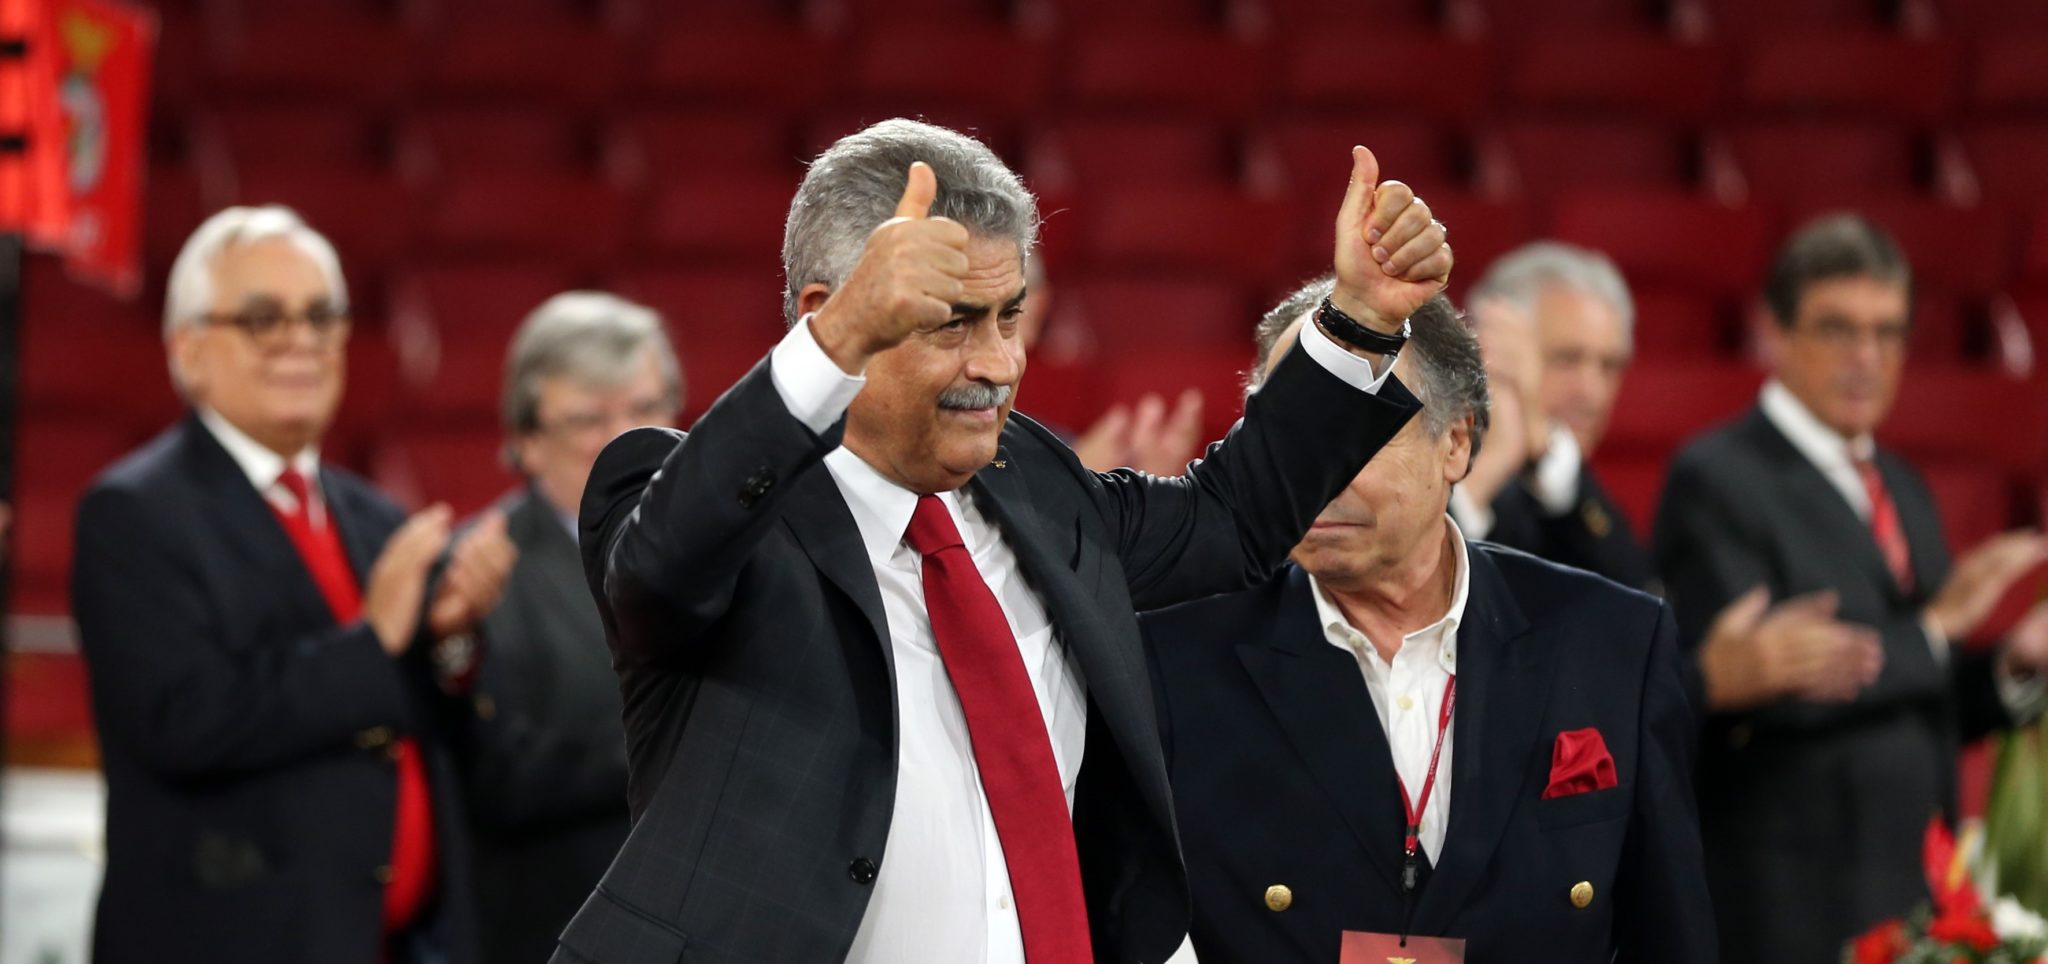 Presidente do Benfica demite-se caso sejam provados “actos menos lícitos” no clube